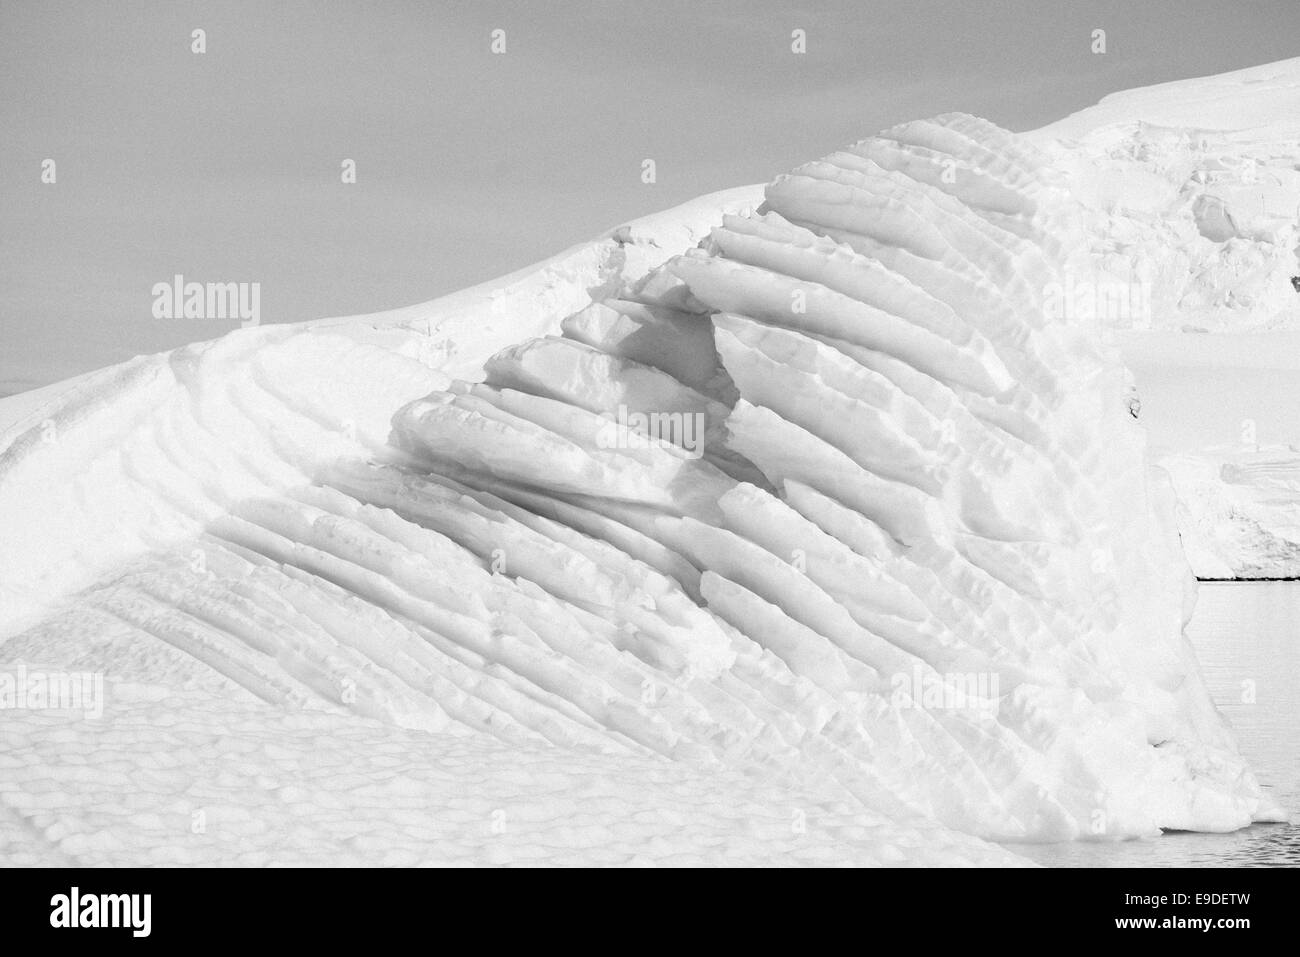 Iceberg in Antarctic waters Stock Photo